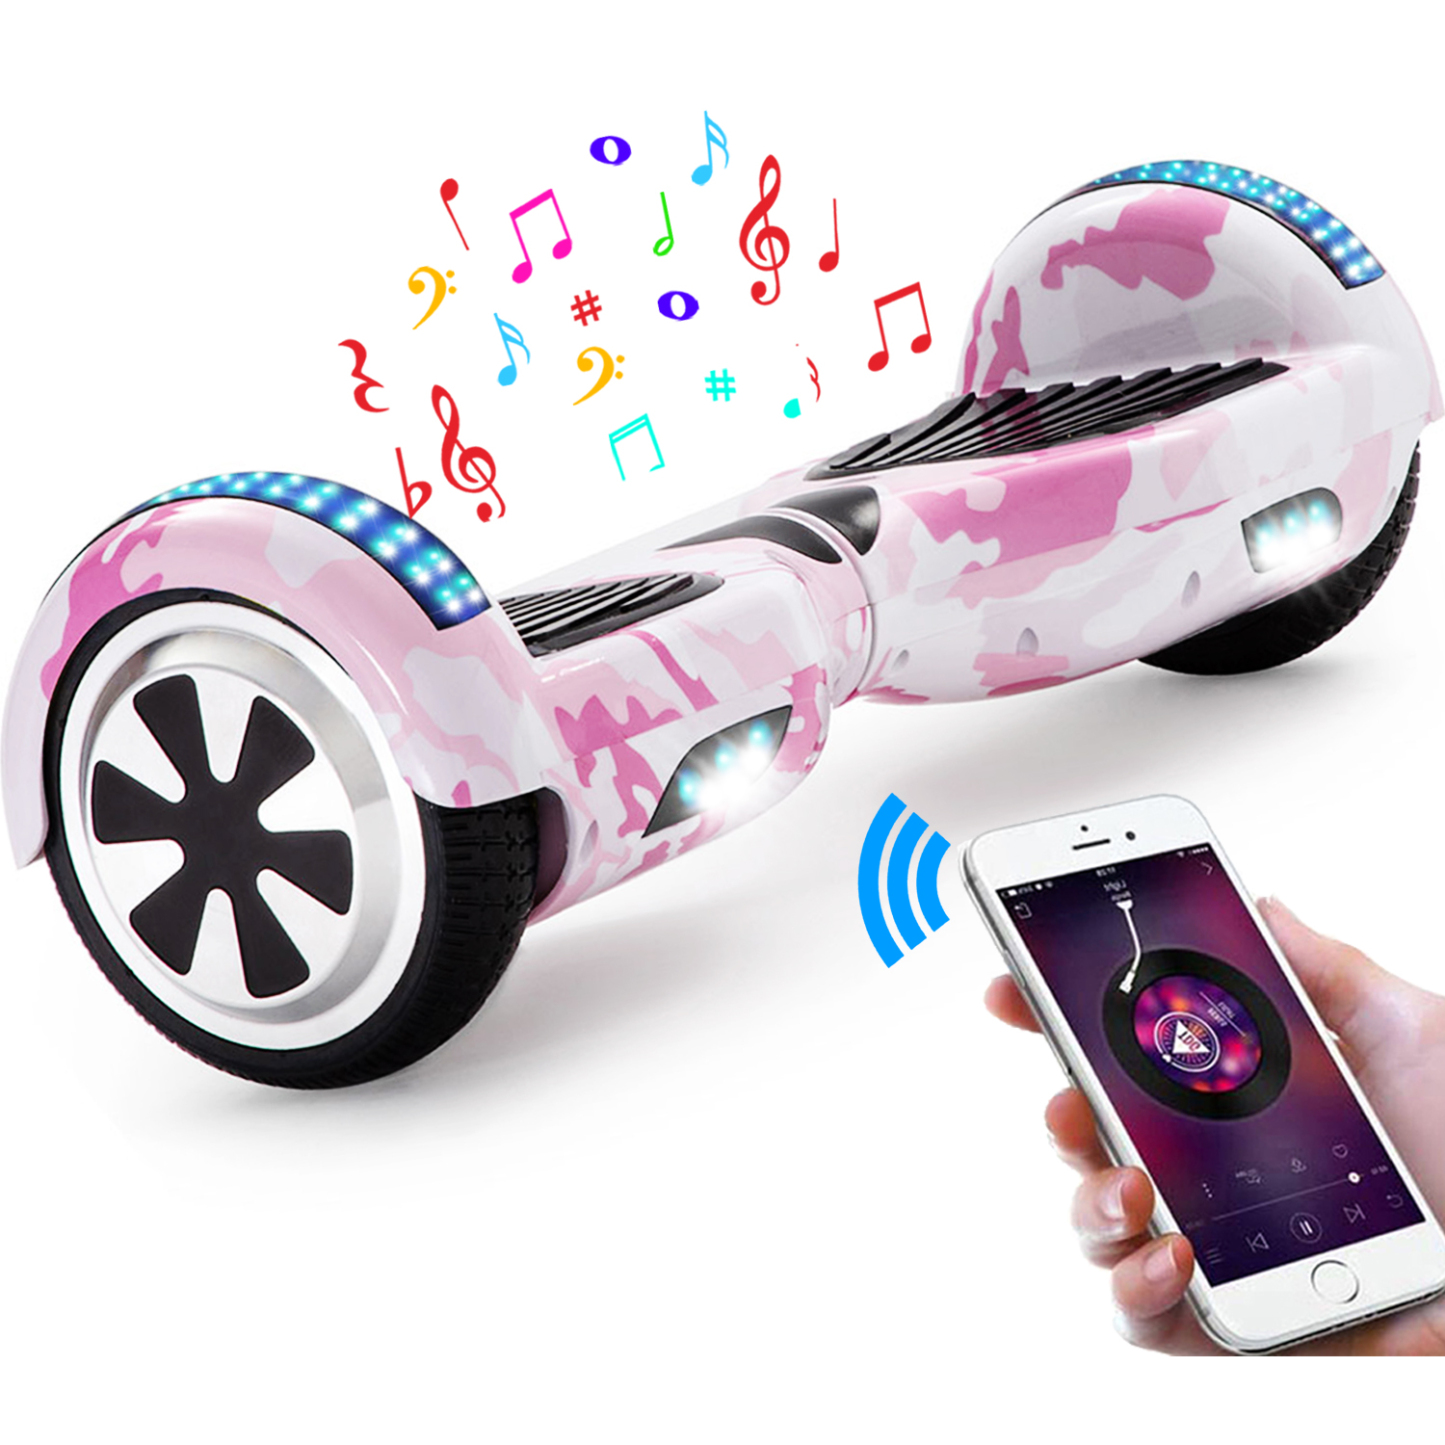 Neues 6,5" Camouflage Hoverboard rosa mit Bluetooth Musik Lautsprecher und LED Licht - 500W 12km/h